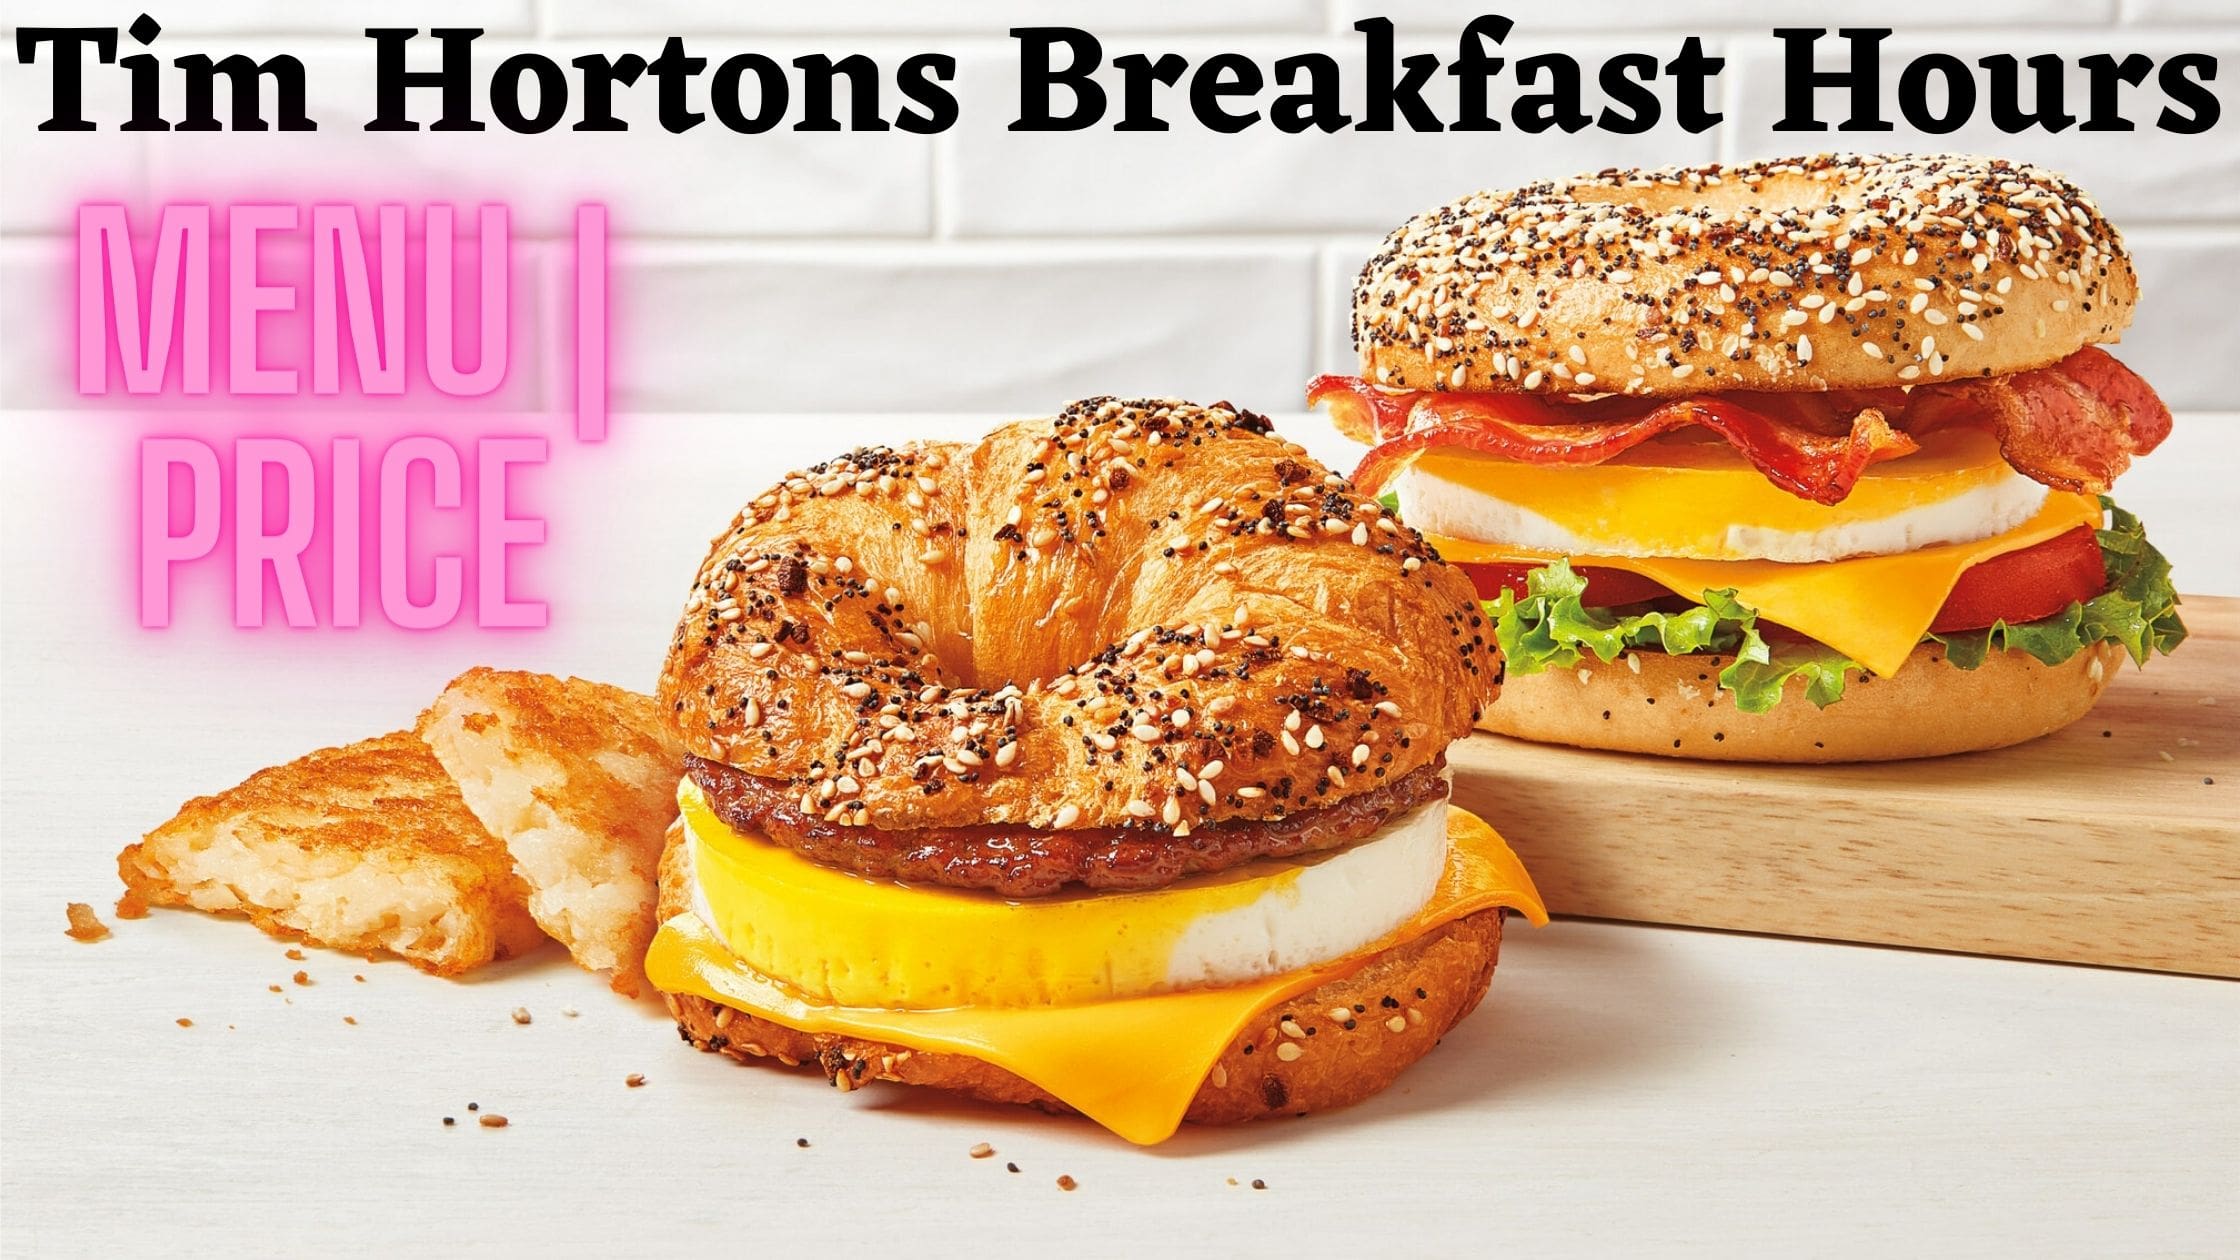 Tim Hortons Breakfast Hours